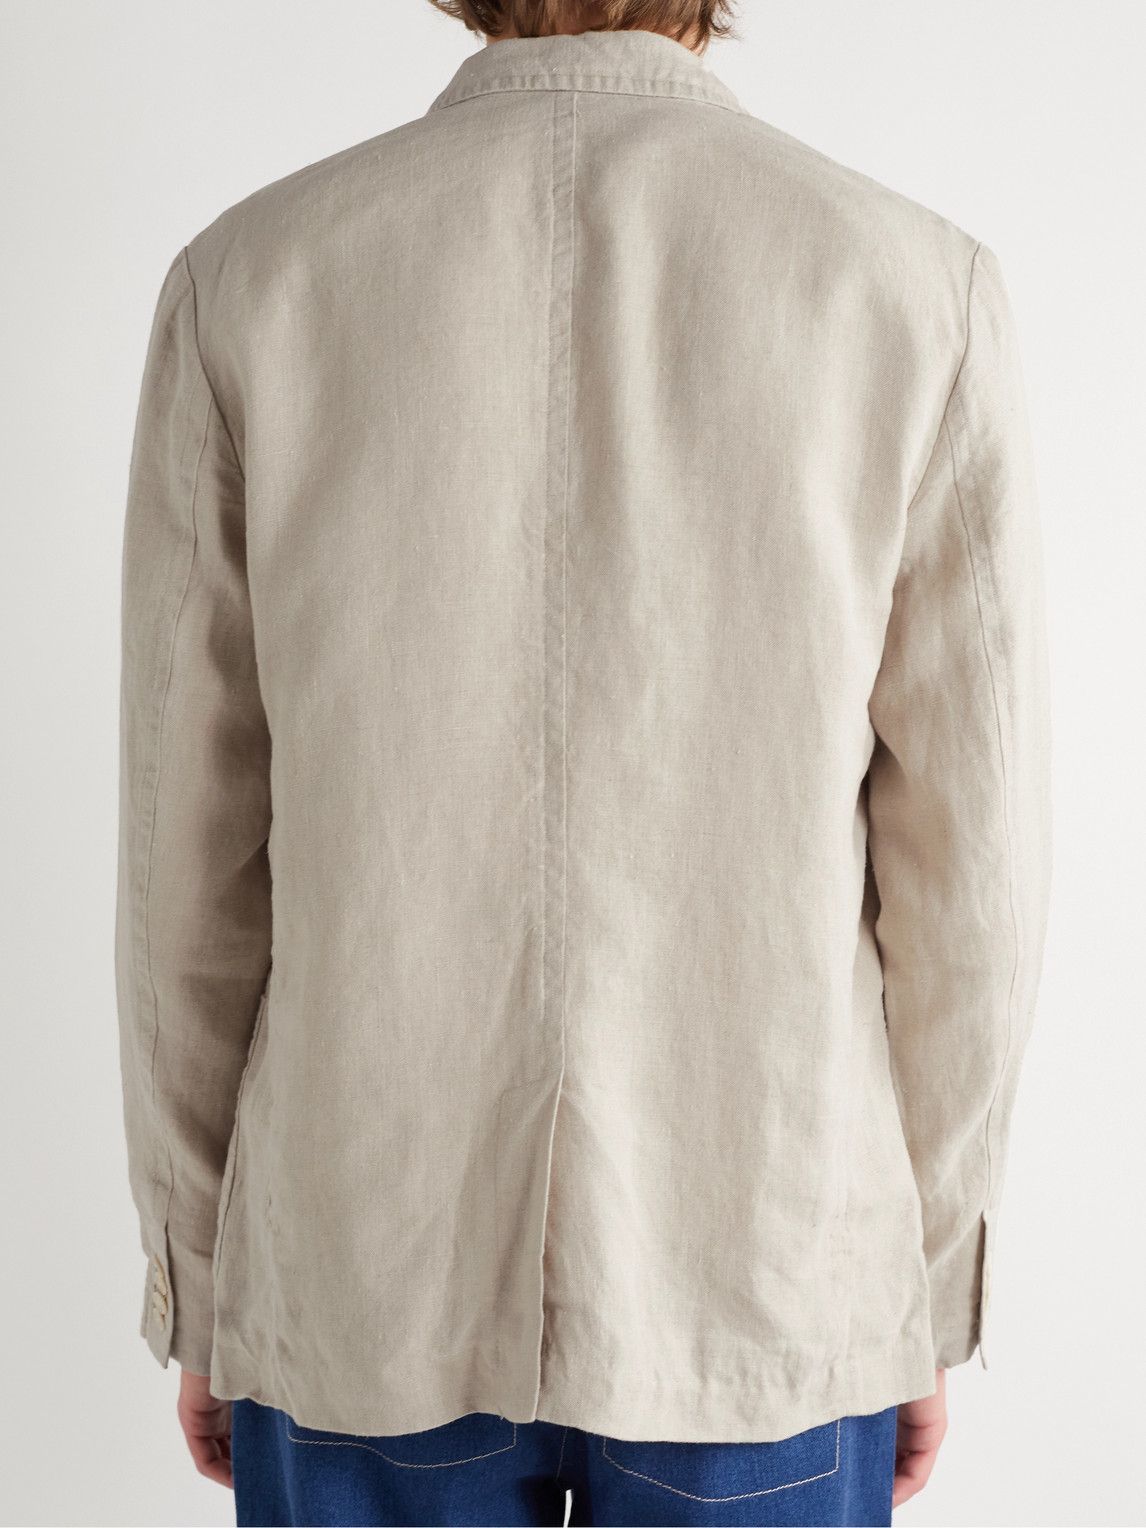 Alex Mill - Mercer Unstructured Garment-Dyed Linen Blazer - Neutrals ...